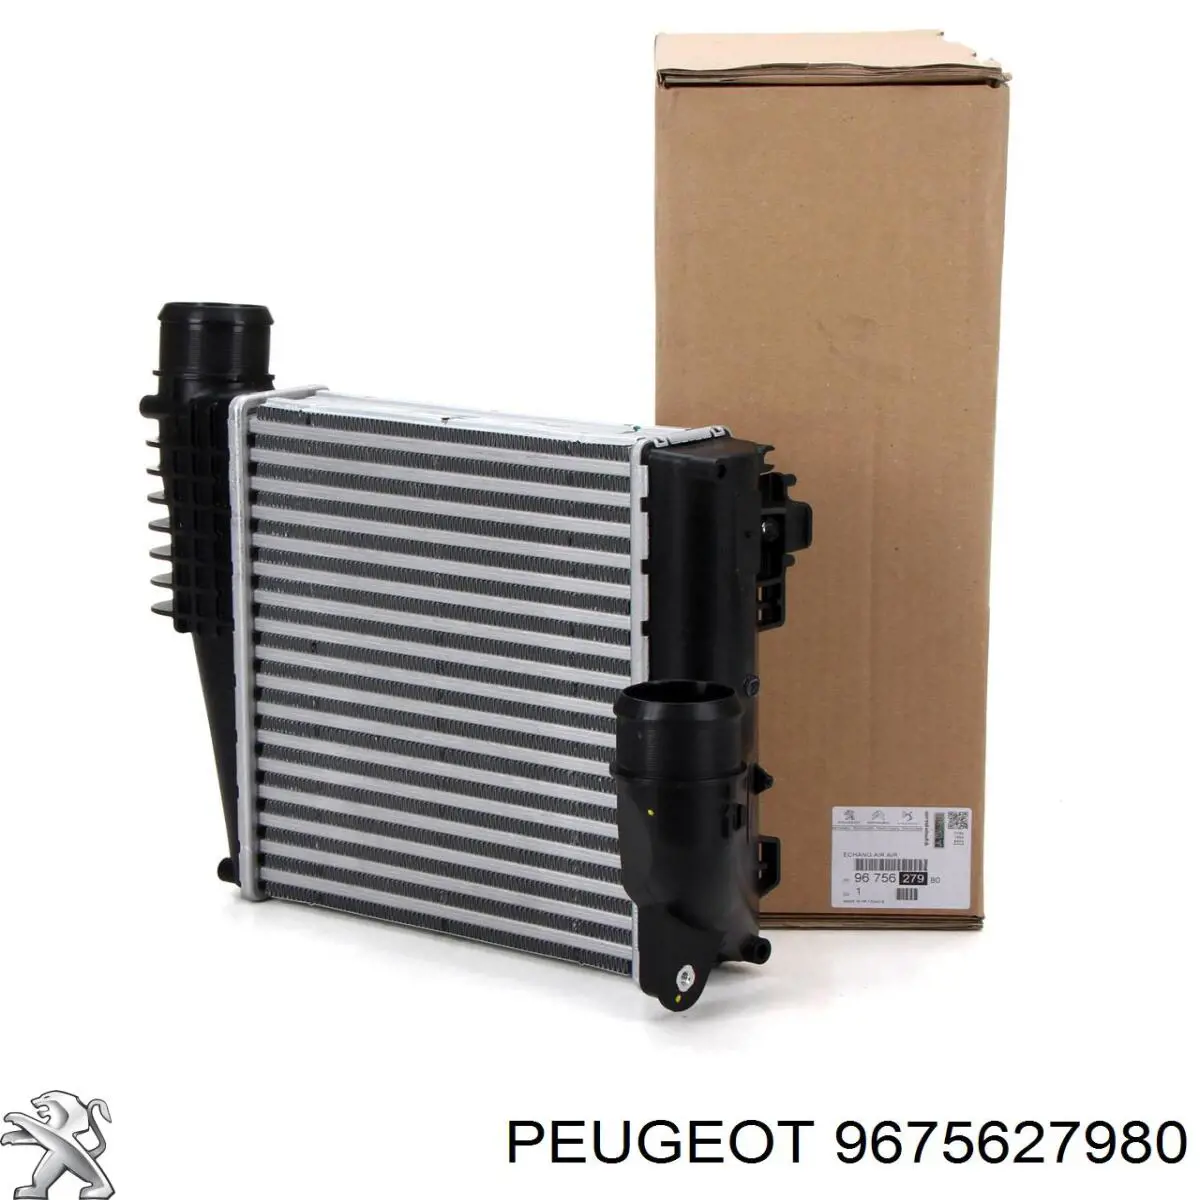 9675627980 Peugeot/Citroen radiador de intercooler